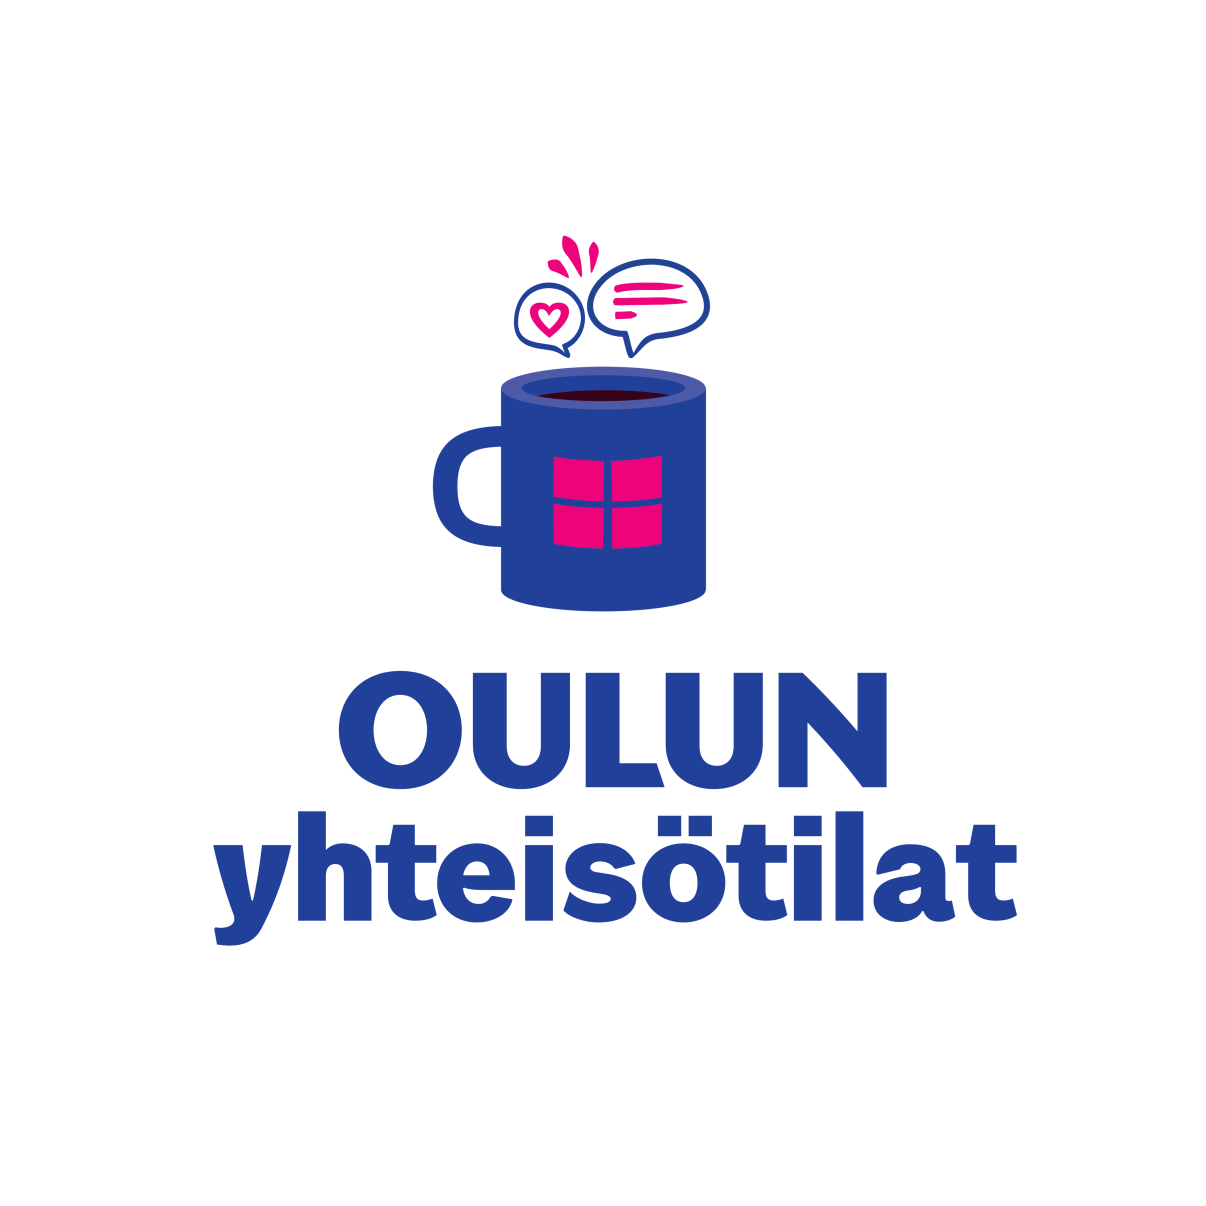 Oulun yhteisötilojen logo, jossa on kahvikuppi kuvana.